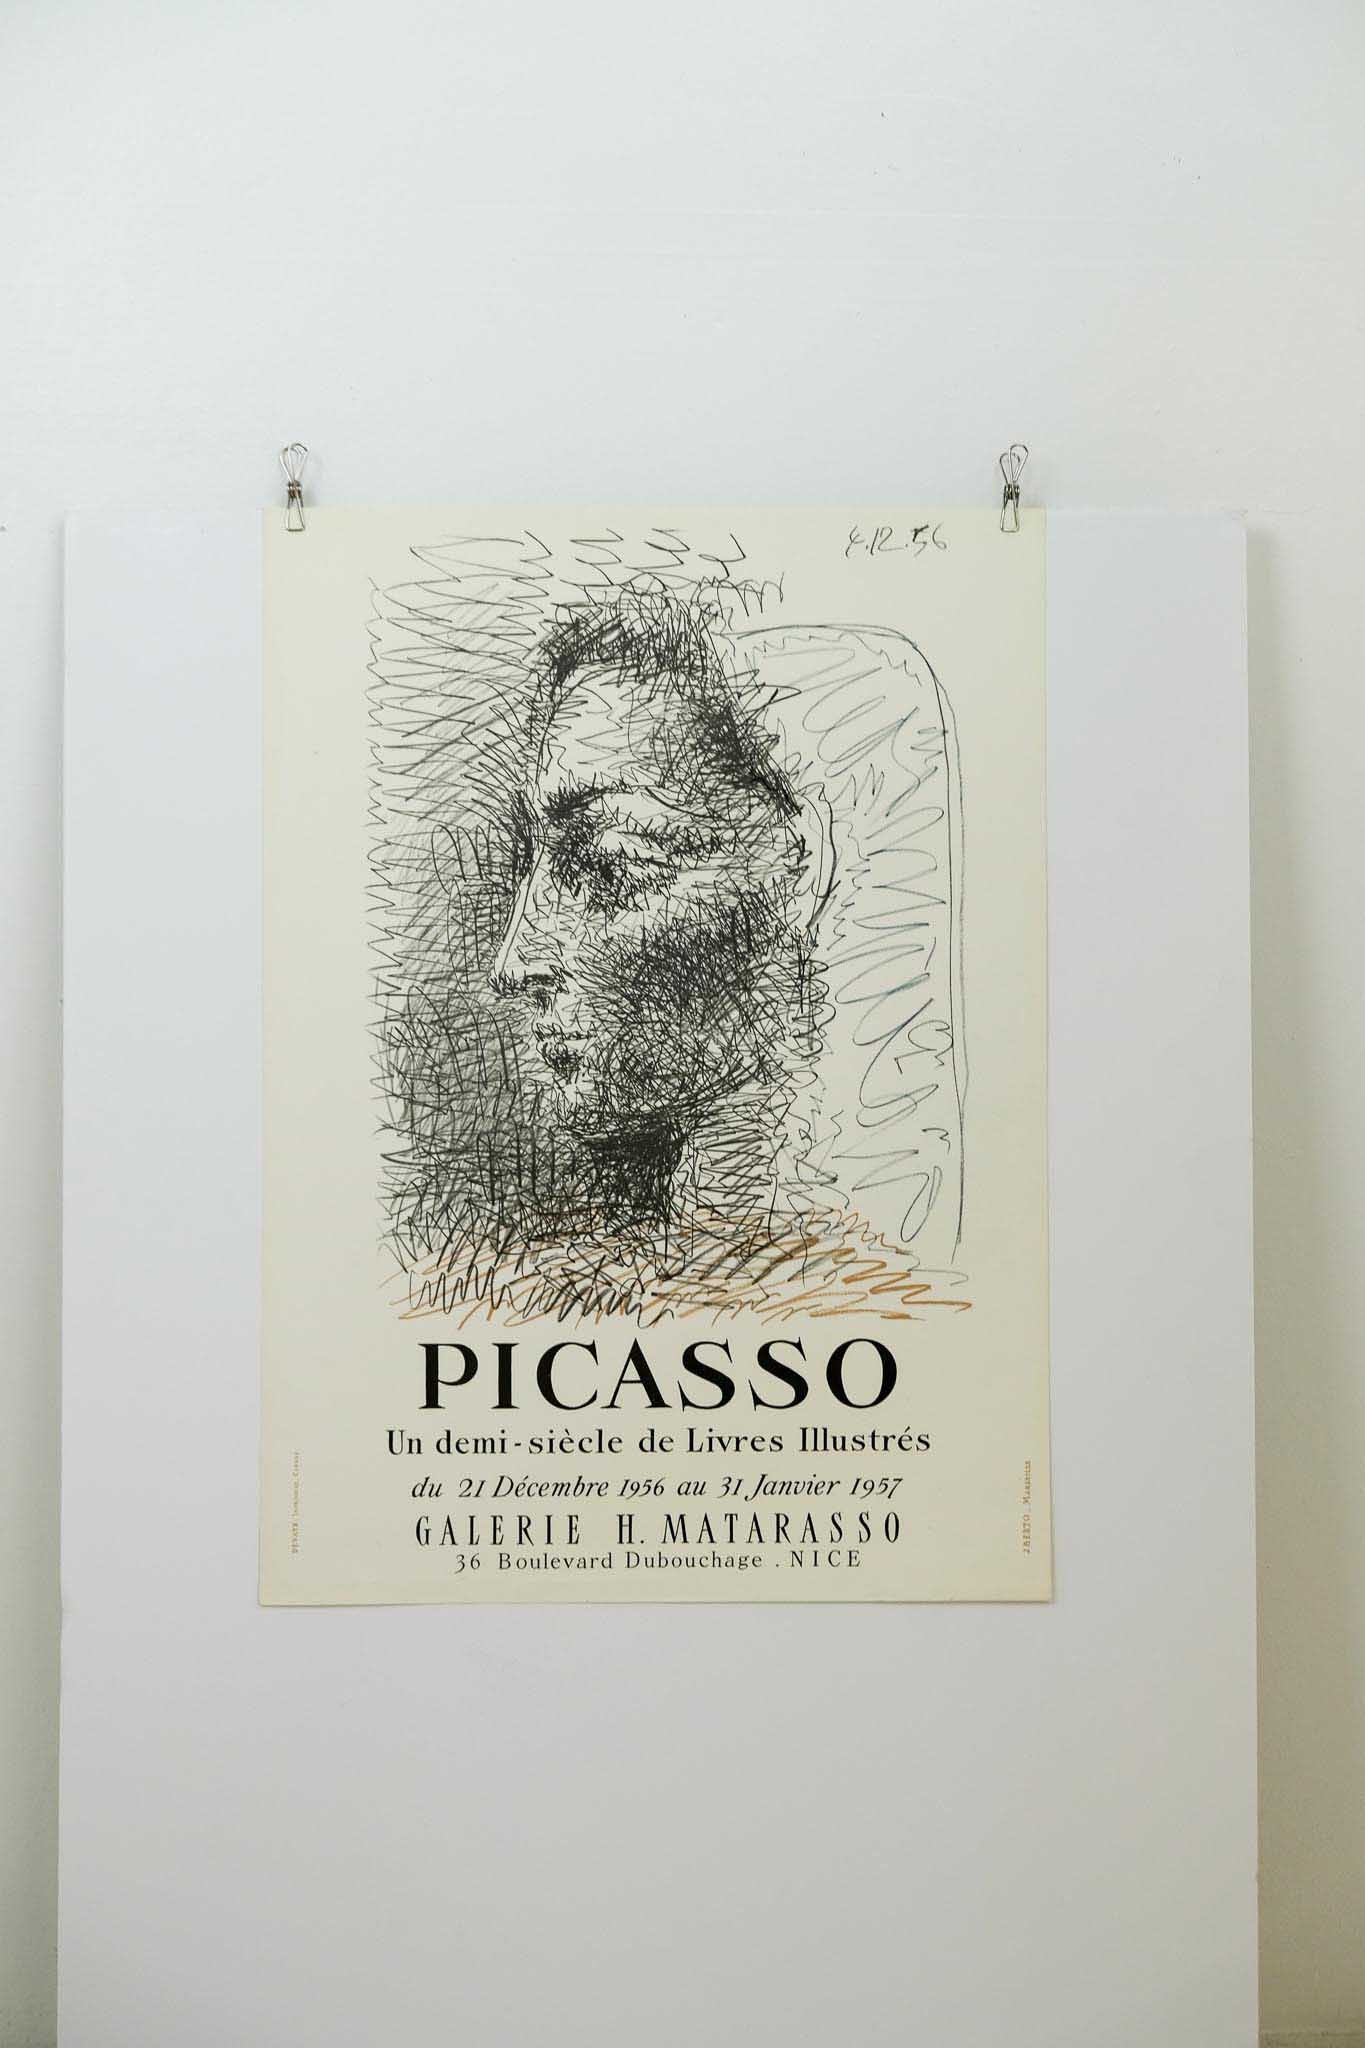 Pablo Picasso "Un demi-siecle de Livres Illustres" Lithograph Print 1957